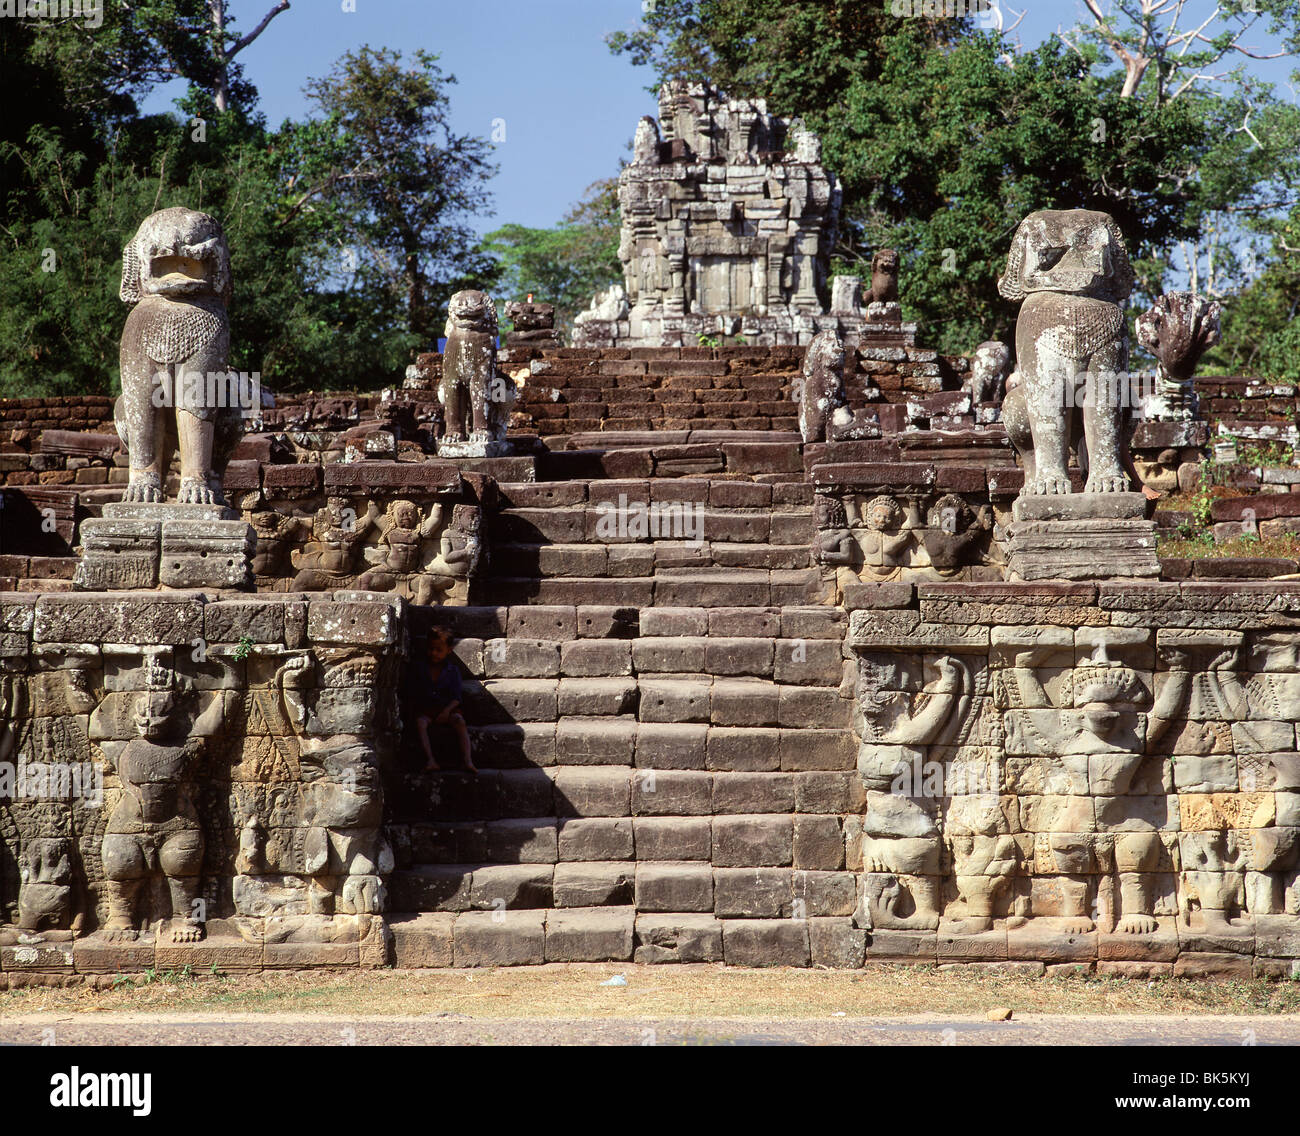 Elephant terrazza del Palazzo Reale, Angkor Thom, Angkor, Sito Patrimonio Mondiale dell'UNESCO, Cambogia, Indocina, Asia sud-orientale, Asia Foto Stock